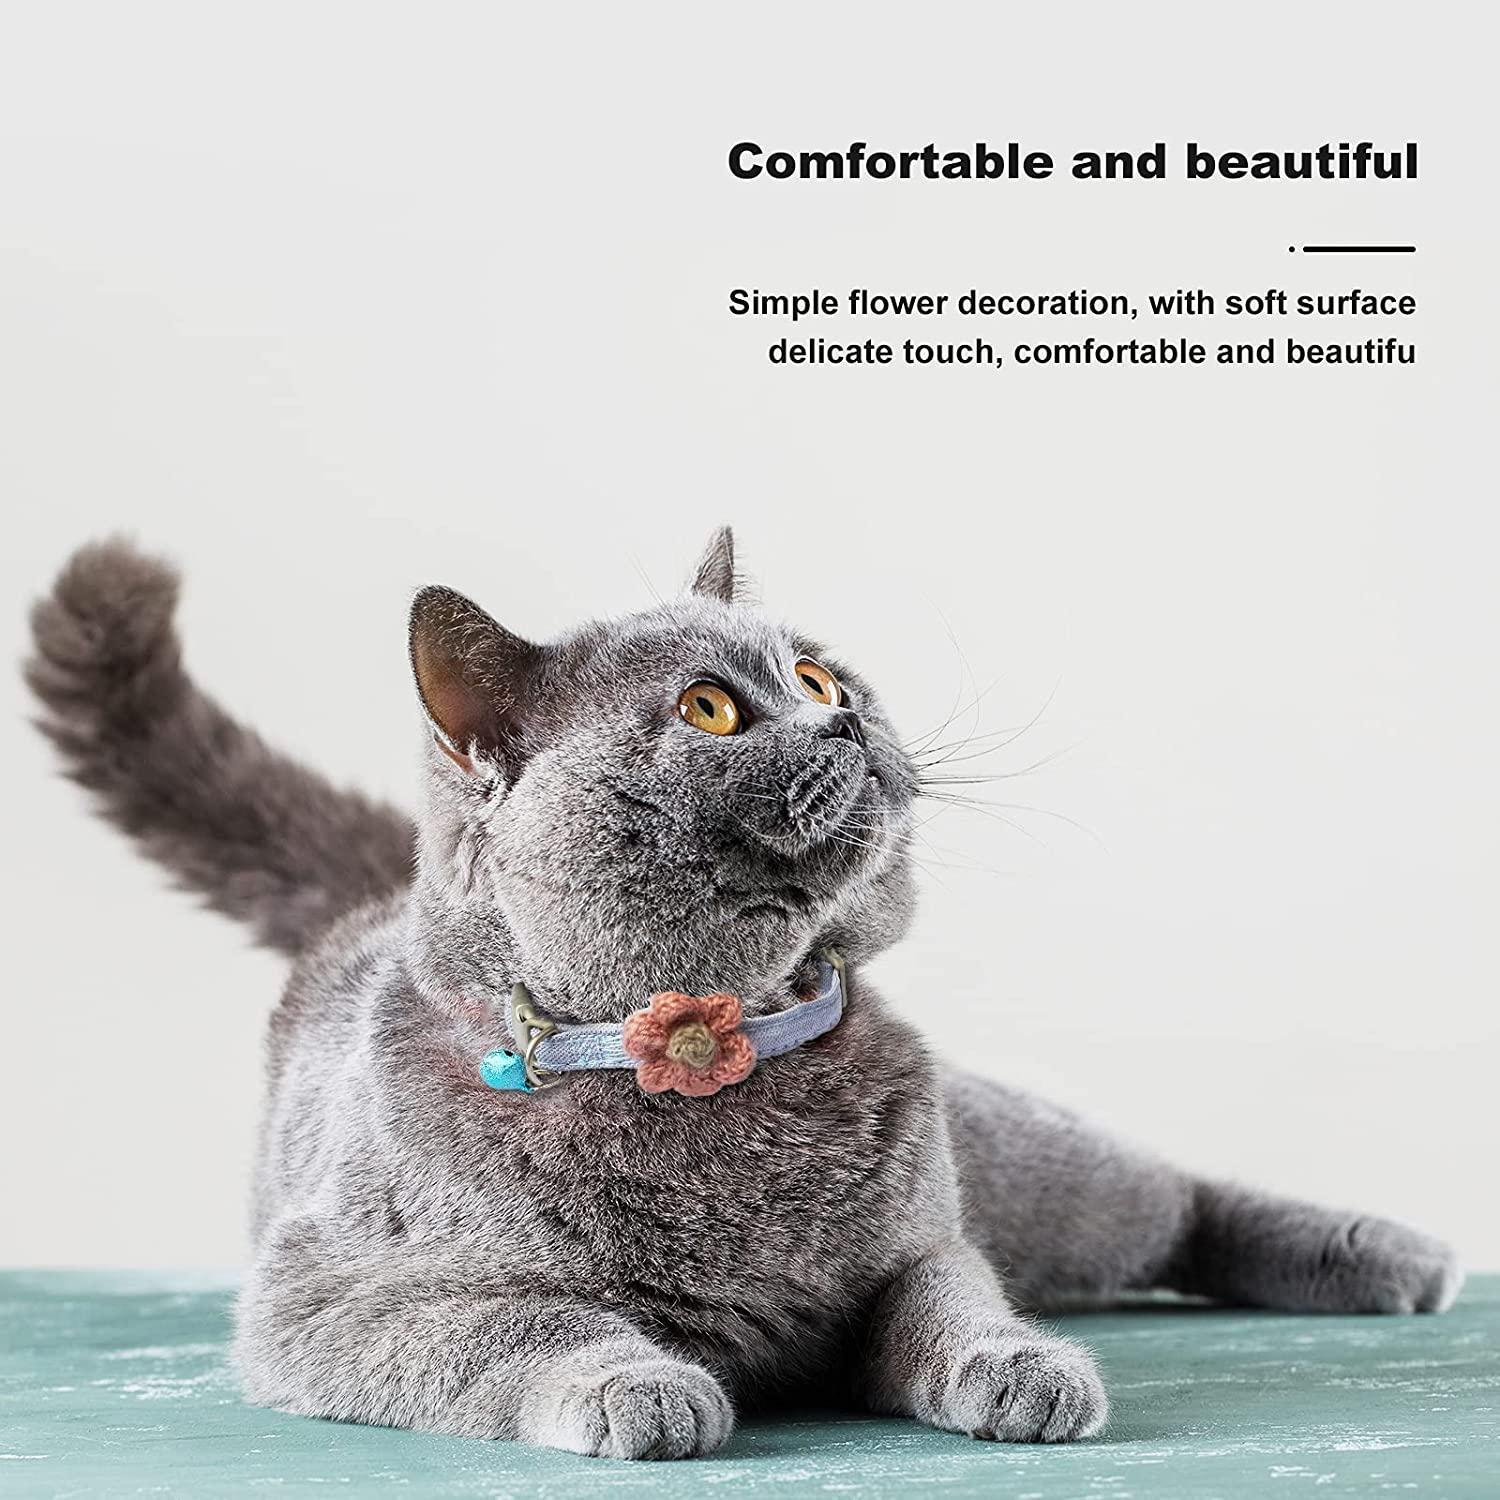 Cat Collar Ornaments Adjustable Cute Pet Collar Adjustable Cat